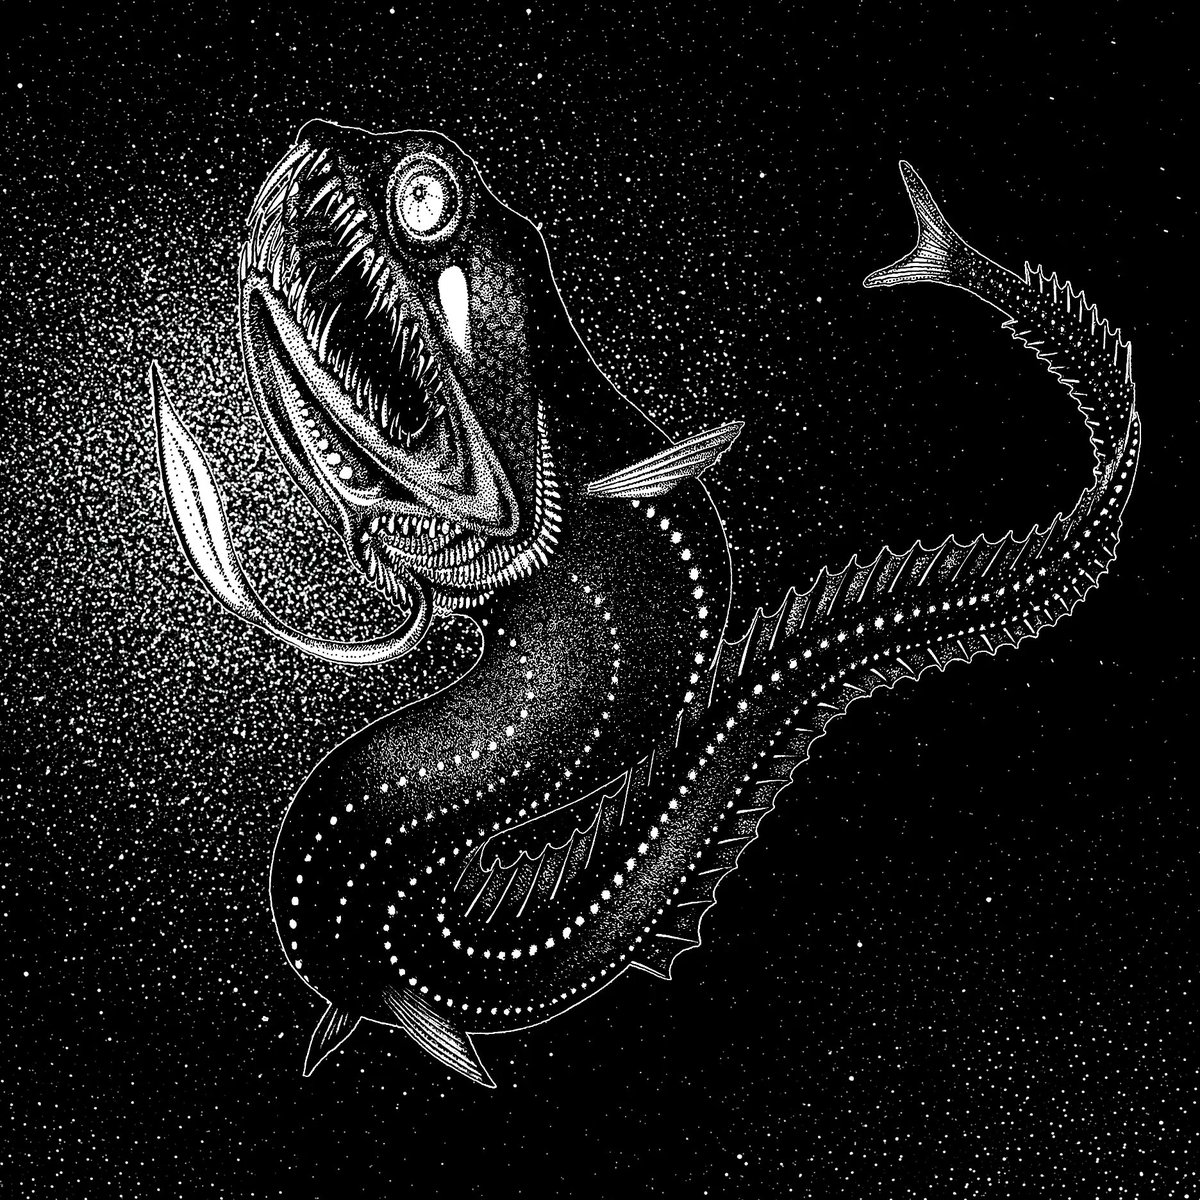 The Black dragonfish (Idiacanthus atlanticus).
The black dragonfish (Idiacanthus atlanticus )
.
#deepseafish #bioluminescence #dragonfish #blackdragonfish #marinebiology #ichthyology #sexualdimorphism #fishillustration #fishart #barbeleddragonfish #sketchafishsunday